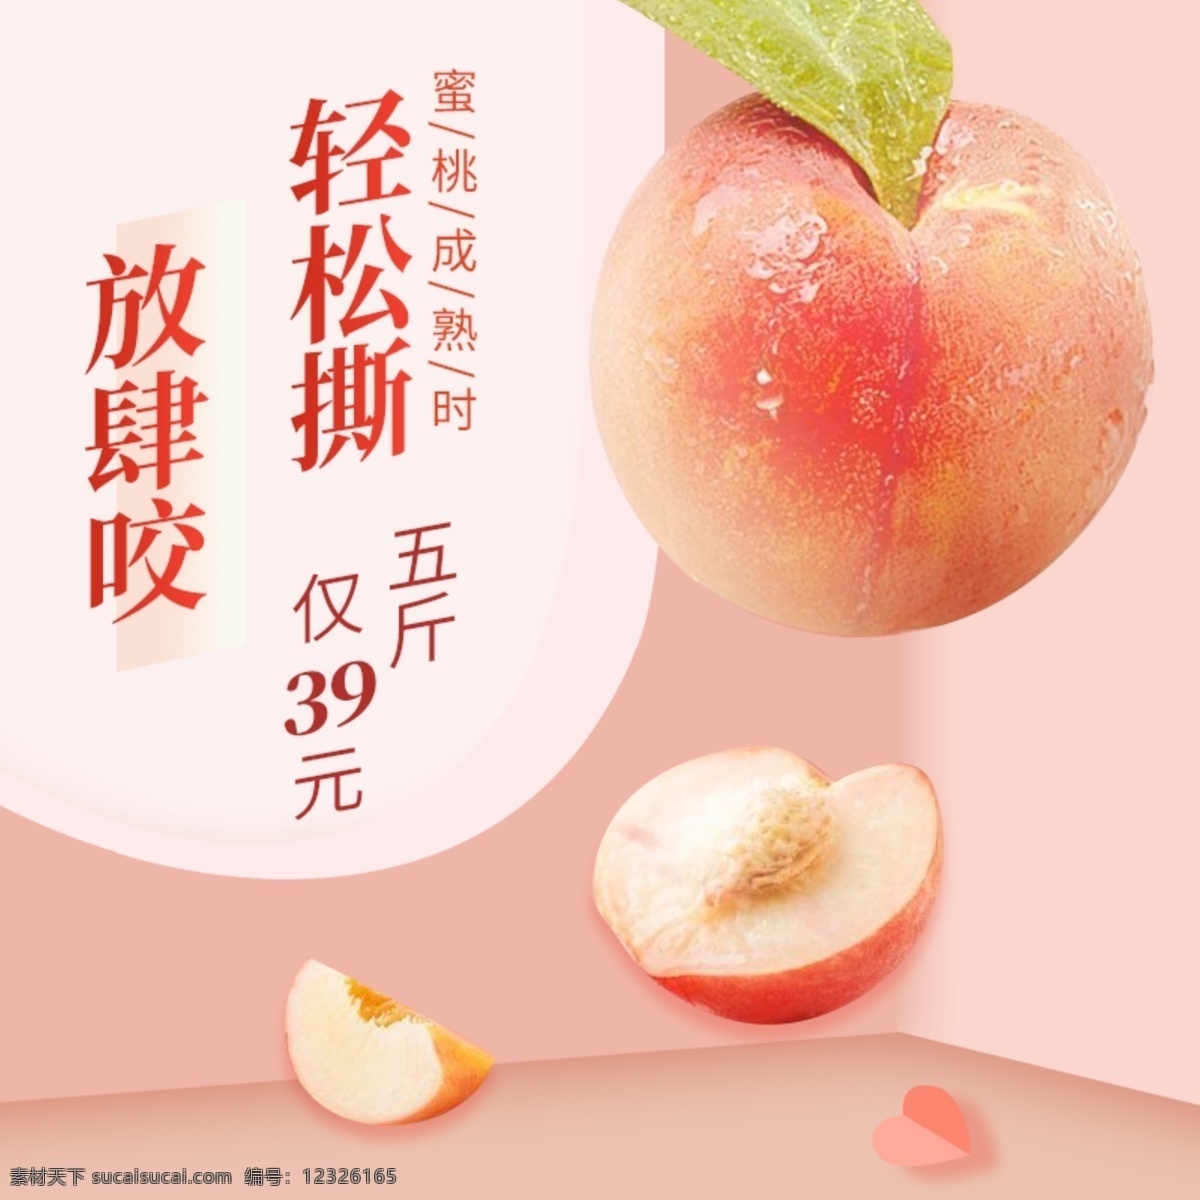 水果 蜜桃 生鲜 直通车 活动 促销 粉色 夏季 主 图 夏季促销 主图 折纸 桃子 桃心